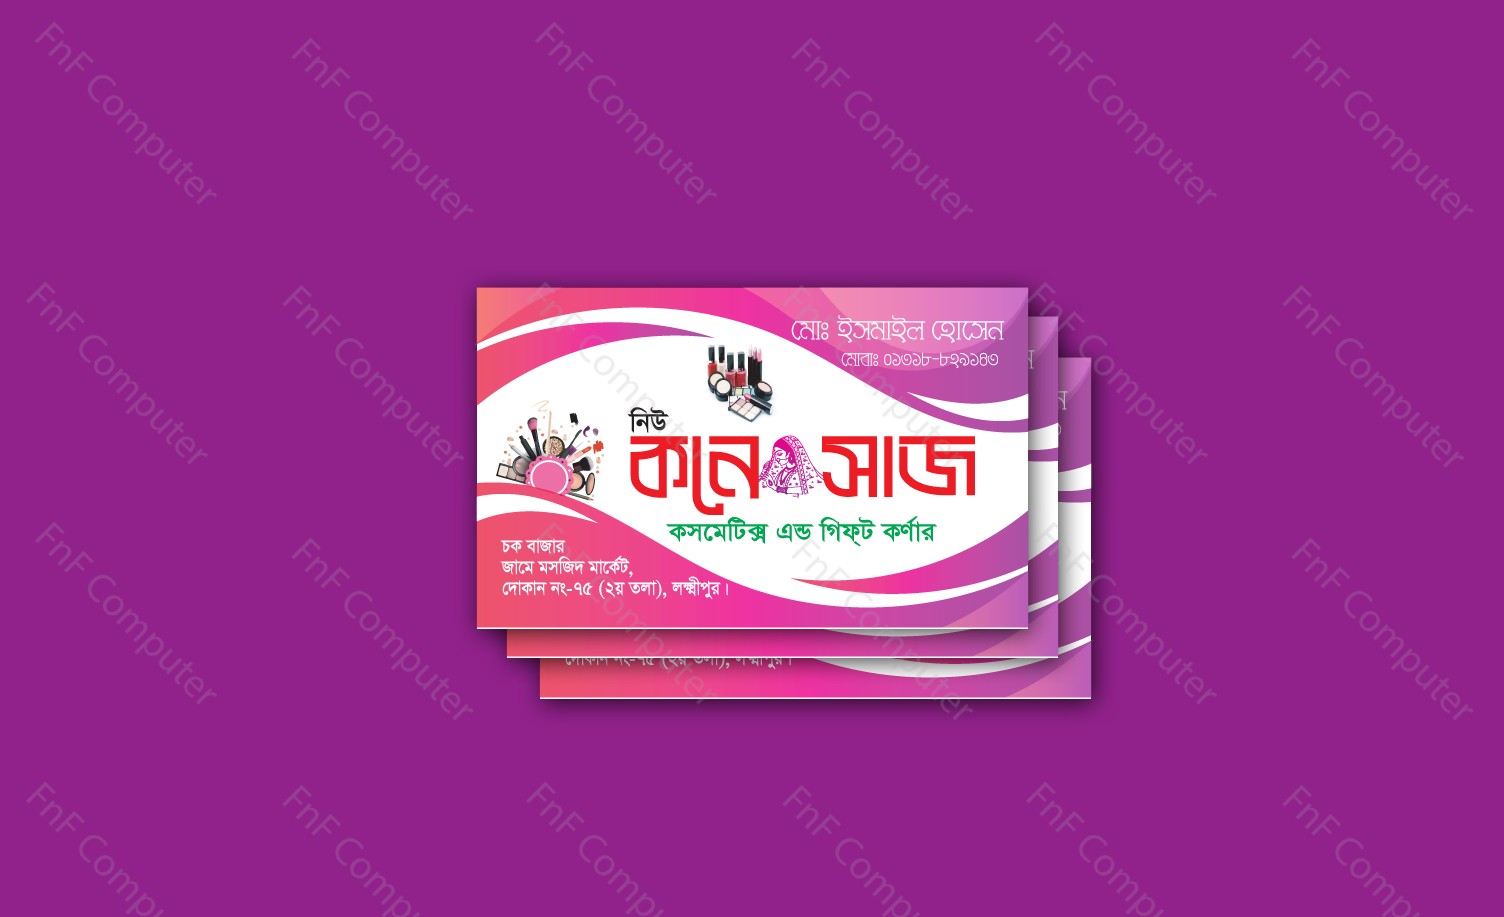 Bangla Business Card Design